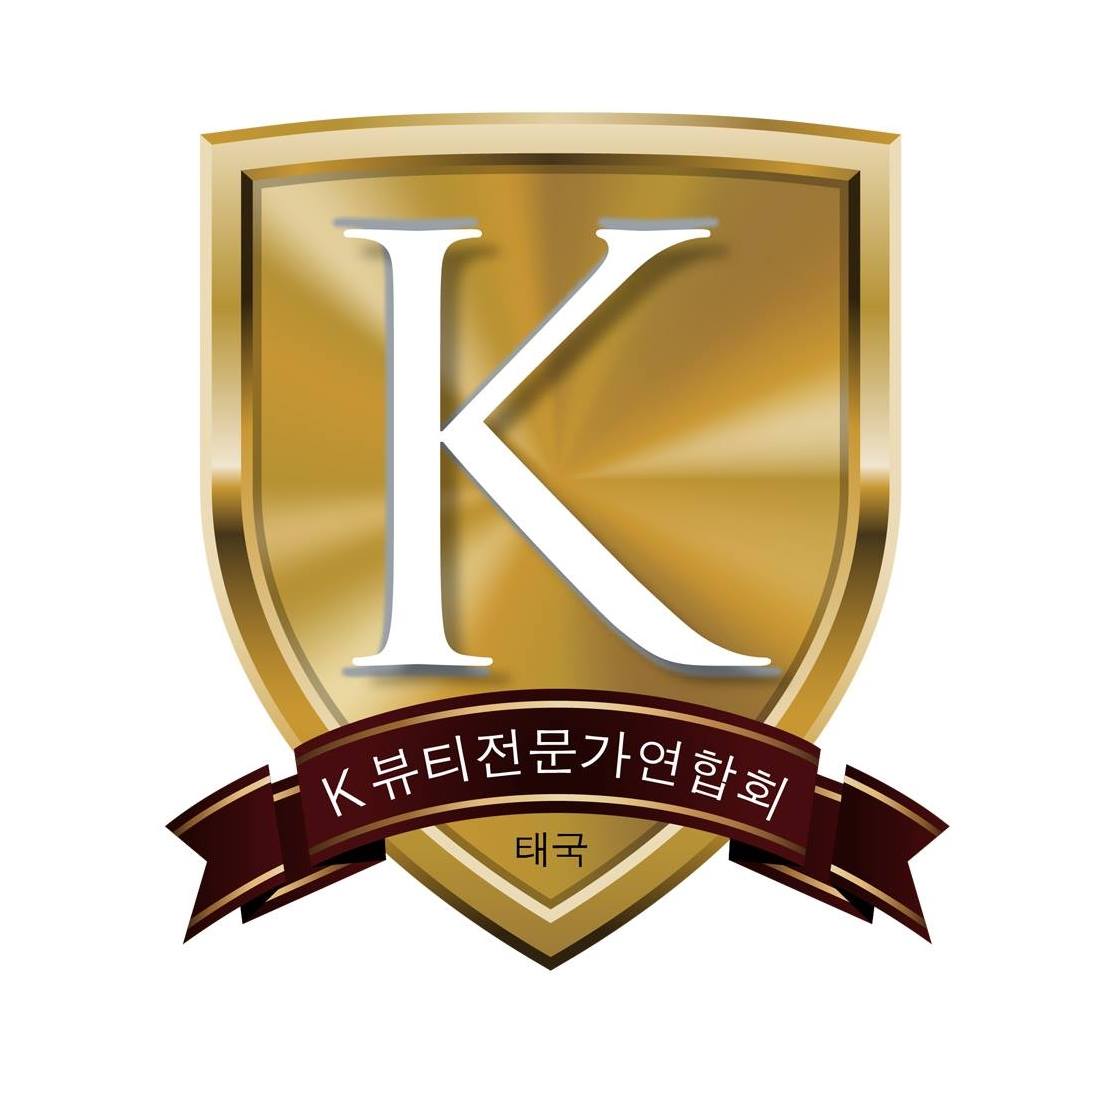 สมาพันธ์ความงามอันดับหนึ่งในเกาหลี K-Beauty